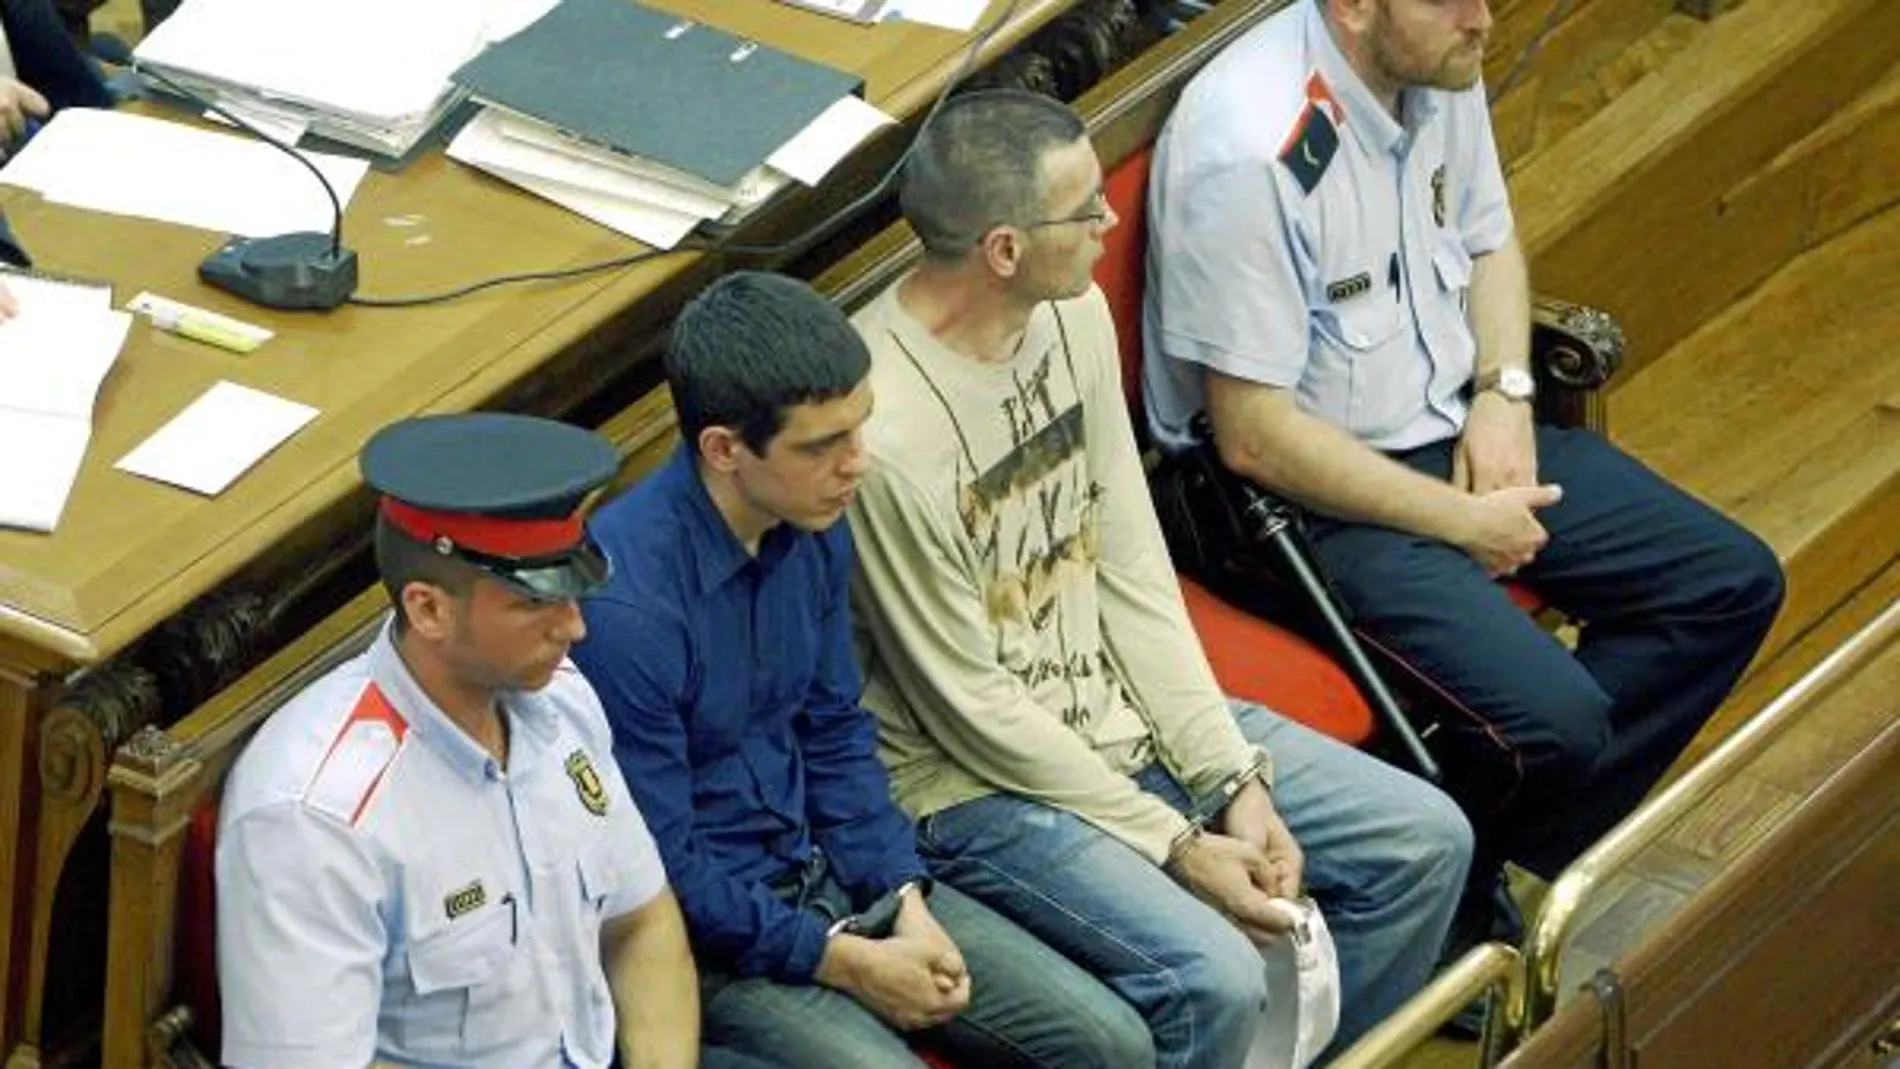 La Policía implica a los acusados en el crimen de la joyería de Castelldefels